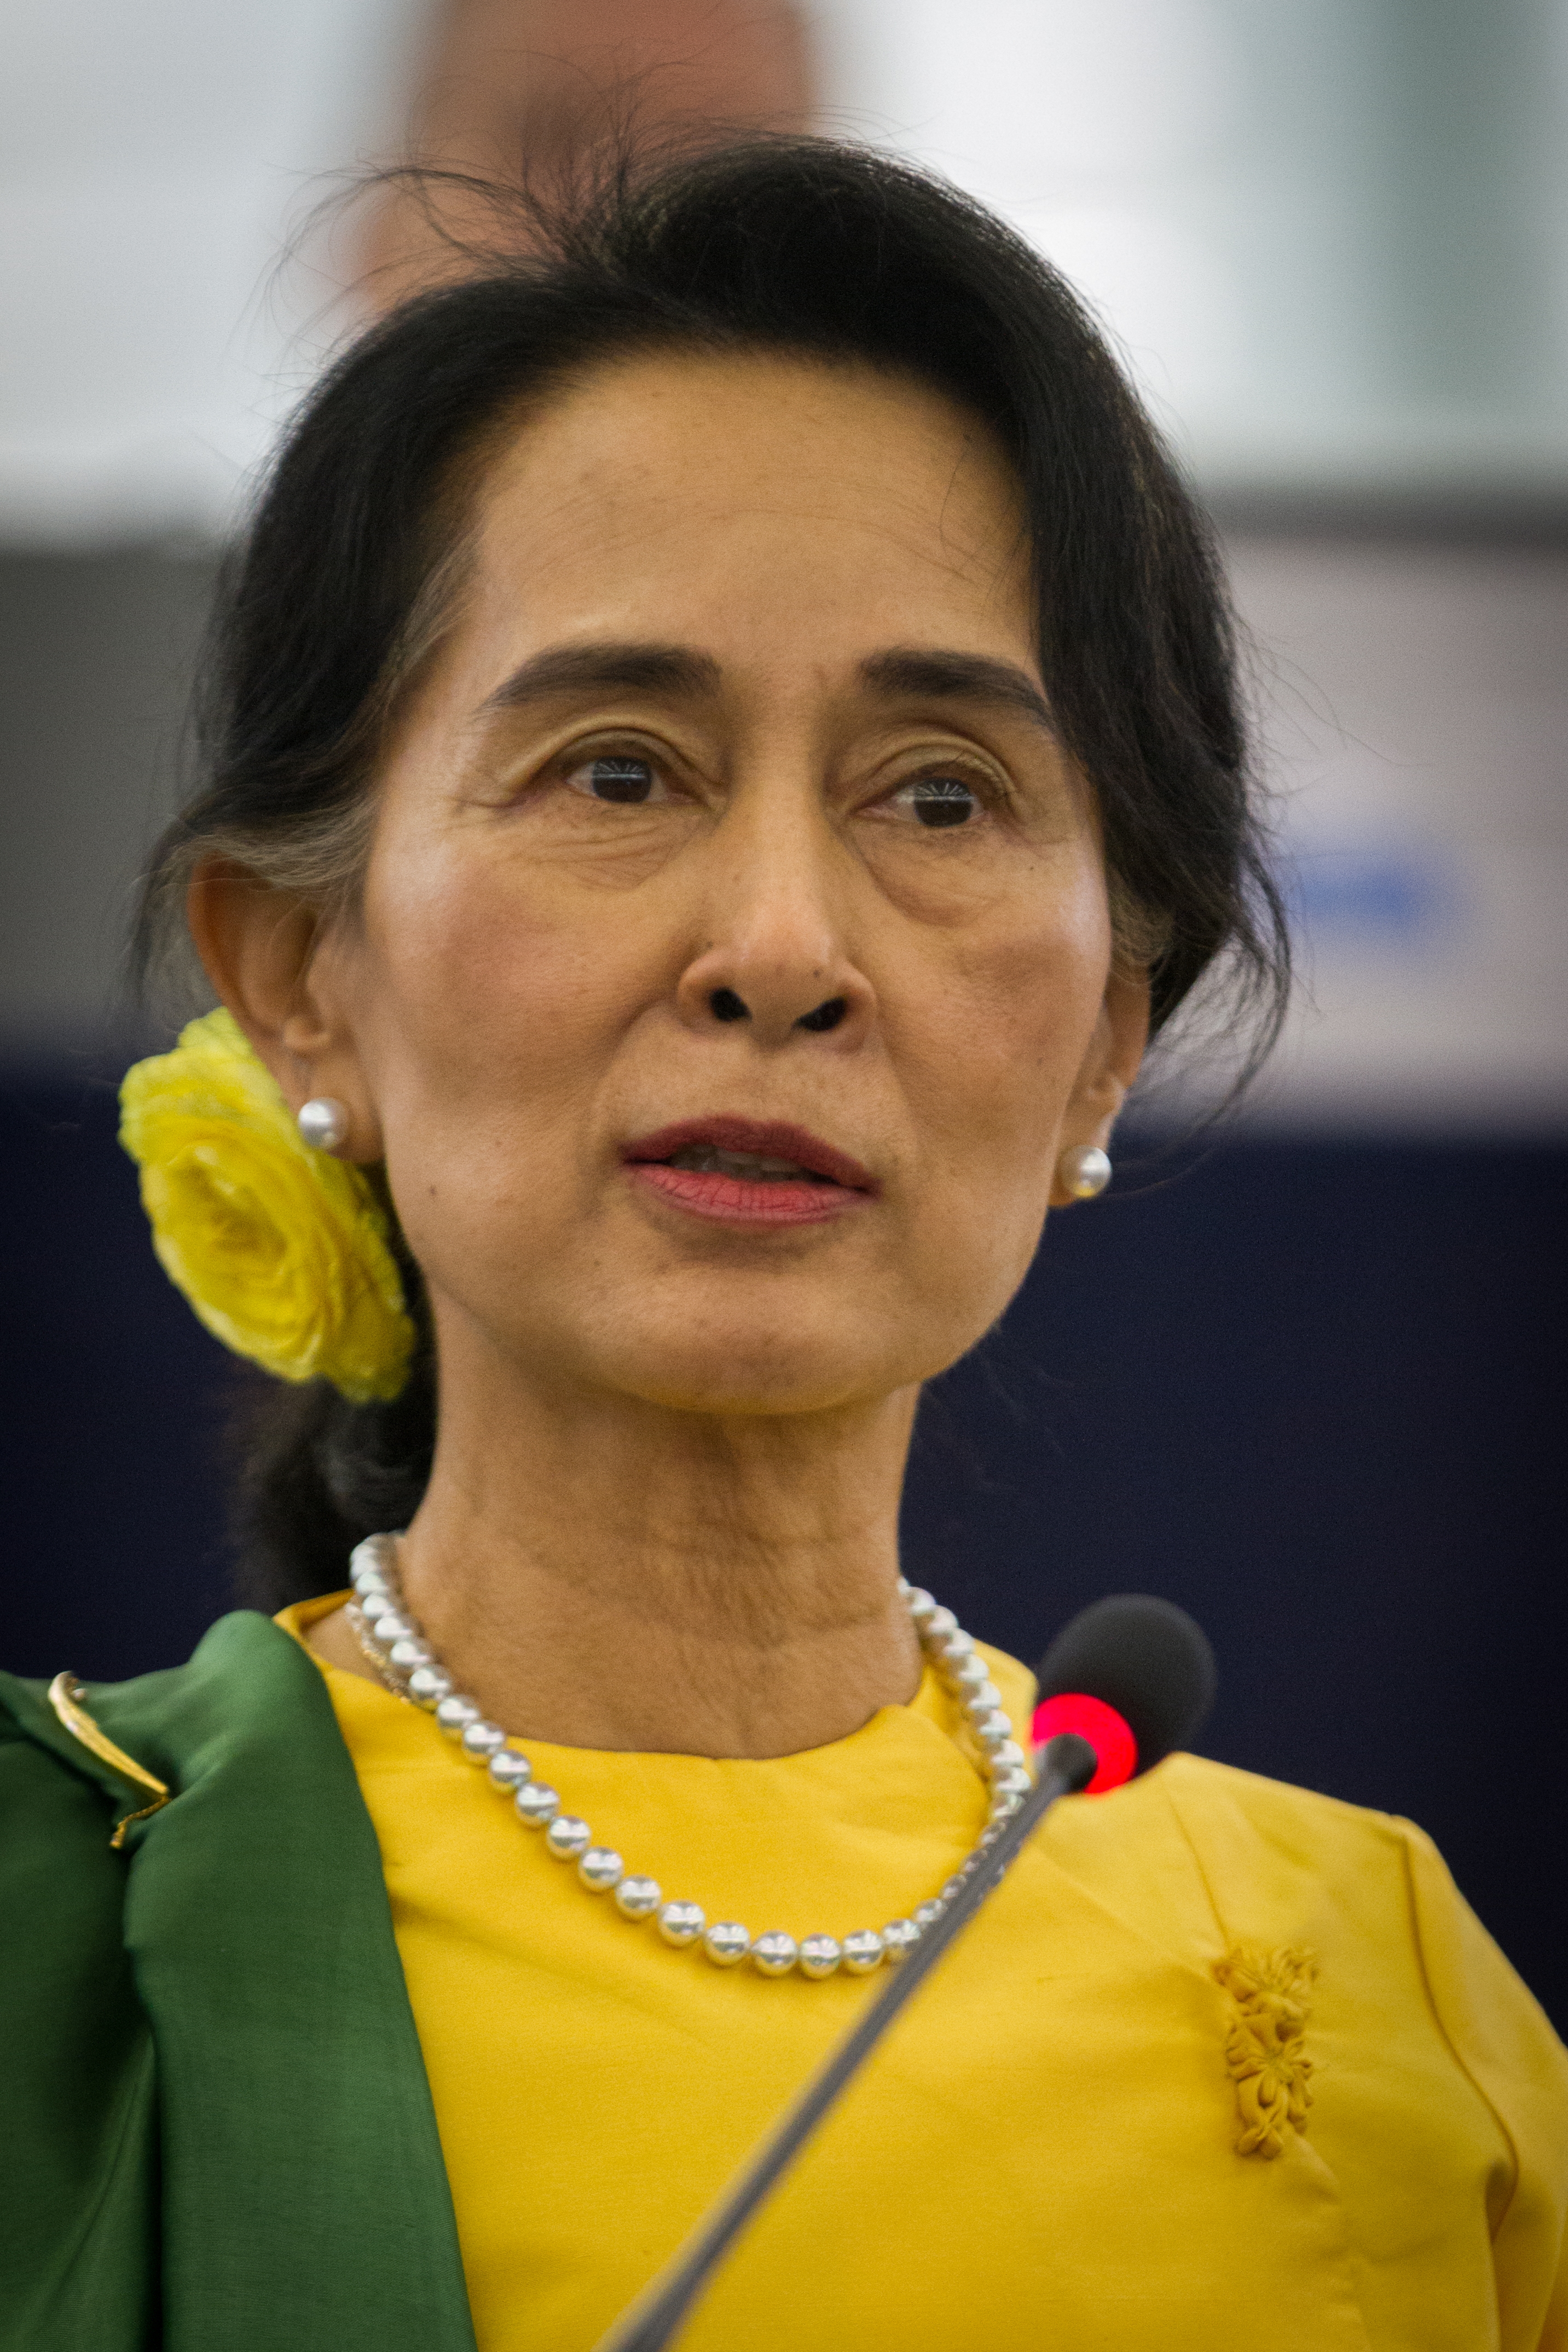 auteur Aung San Suu Kyi de la citation La logique faible, les incohérences et l'aliénation du peuple sont des caractéristiques communes de l'autoritarisme. Les tentatives implacables de régimes totalitaires pour empêcher la libre pensée et les nouvelles idées et l'affirmation persistante de leur propre justesse leur apportent une stase intellectuelle qu'ils projettent à la nation dans son ensemble. L'intimidation et la propagande fonctionnent dans un duo d'oppression, tandis que les gens, rodés dans la peur et la méfiance, apprennent à se dissiper et à garder le silence.